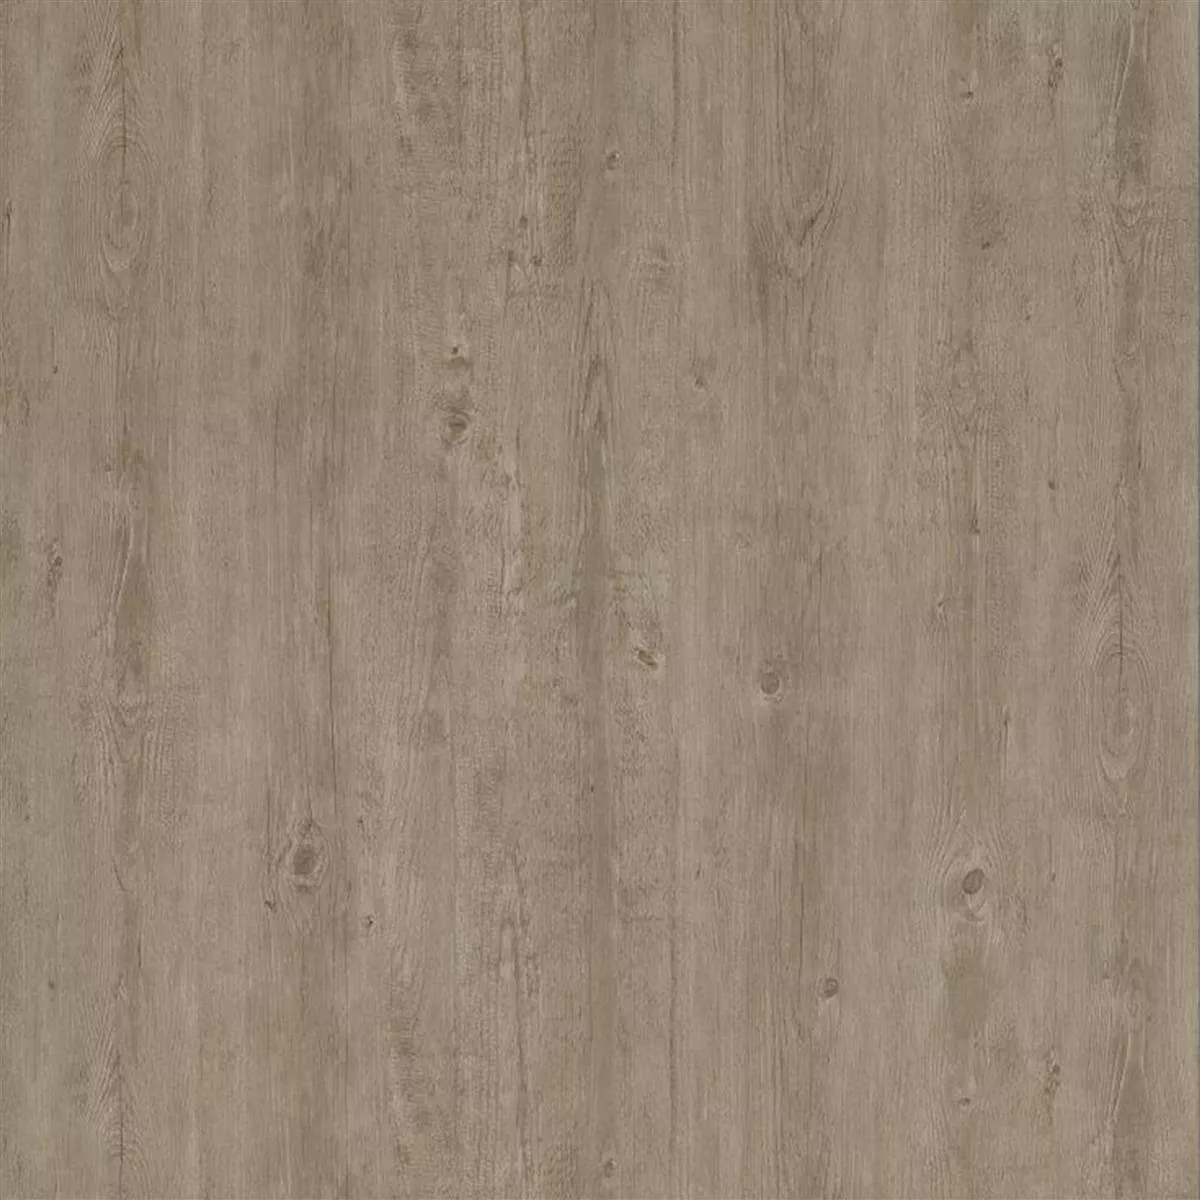 Vinyle Carrelage Sol Et Mur Système De Clic Elderwood Beige Gris 17,2x121cm